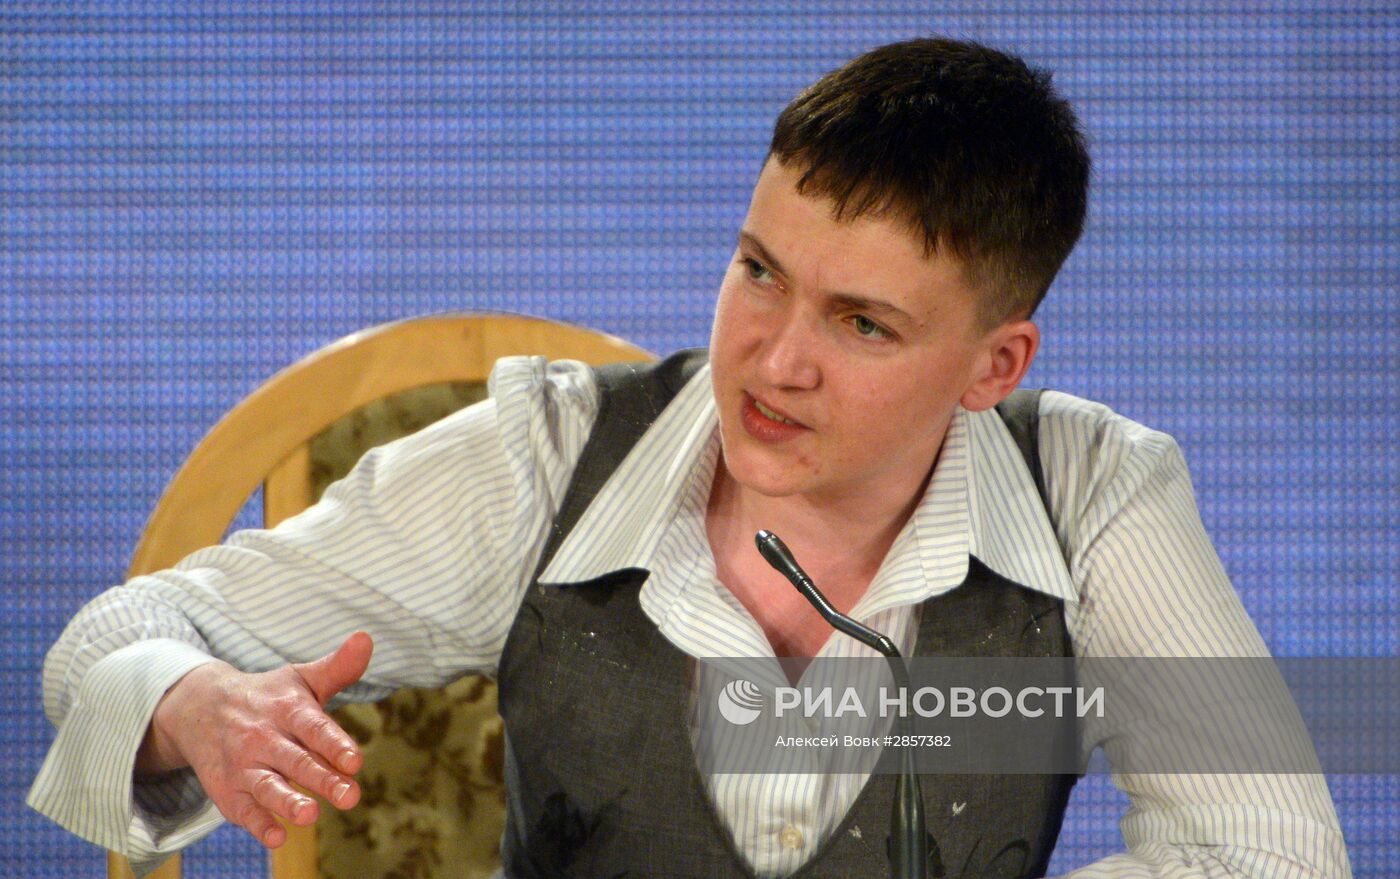 Пресс-конференция военнослужащей Надежды Савченко в Киеве